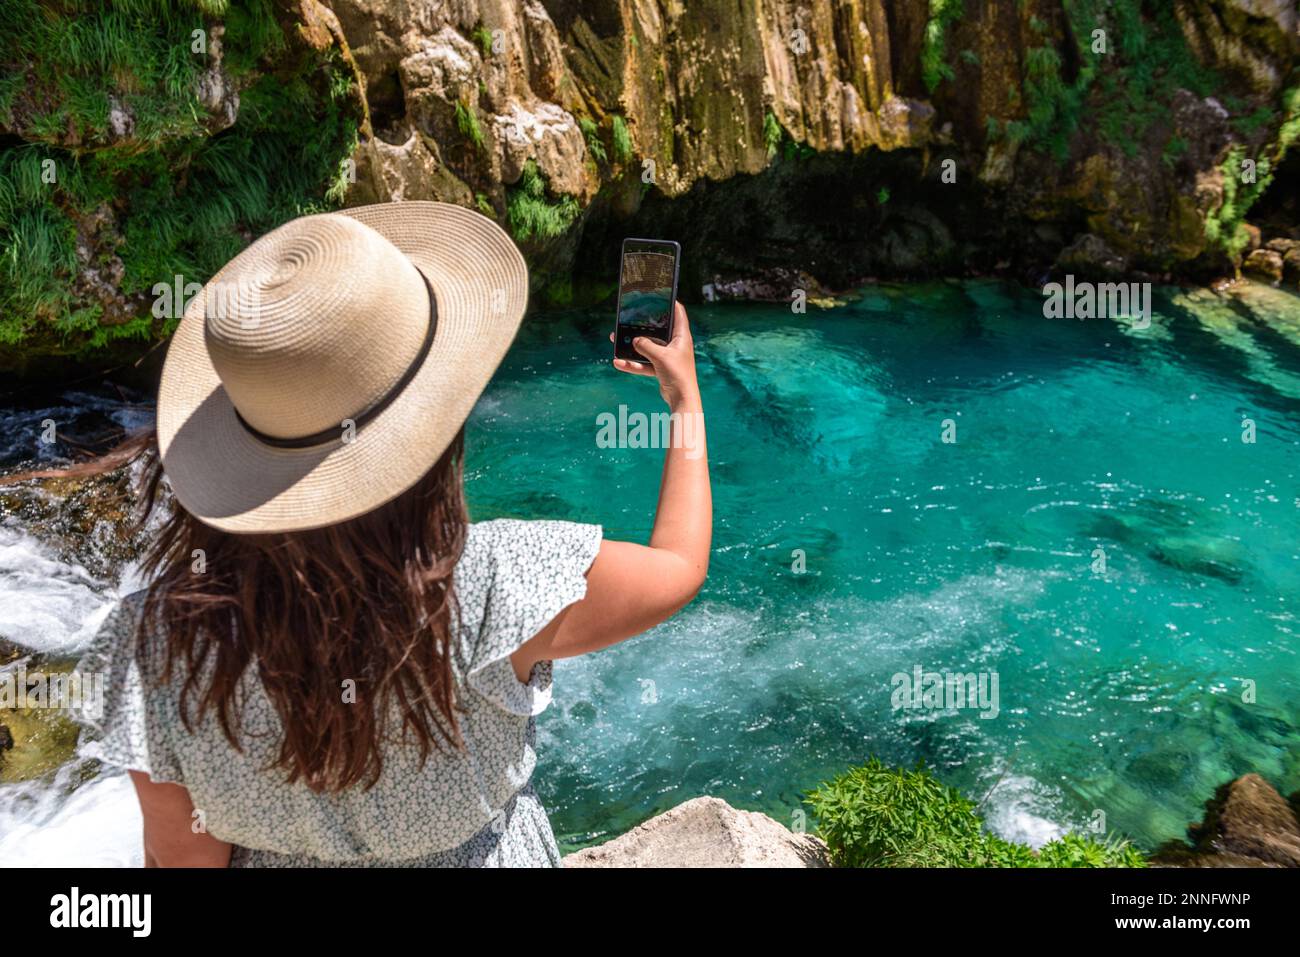 Rückansicht eines Mädchens, das ein Foto vom wunderschönen türkisfarbenen Bach unter den felsigen Klippen am Krcic Wasserfall in der Nähe von Knin, Kroatien, macht Stockfoto